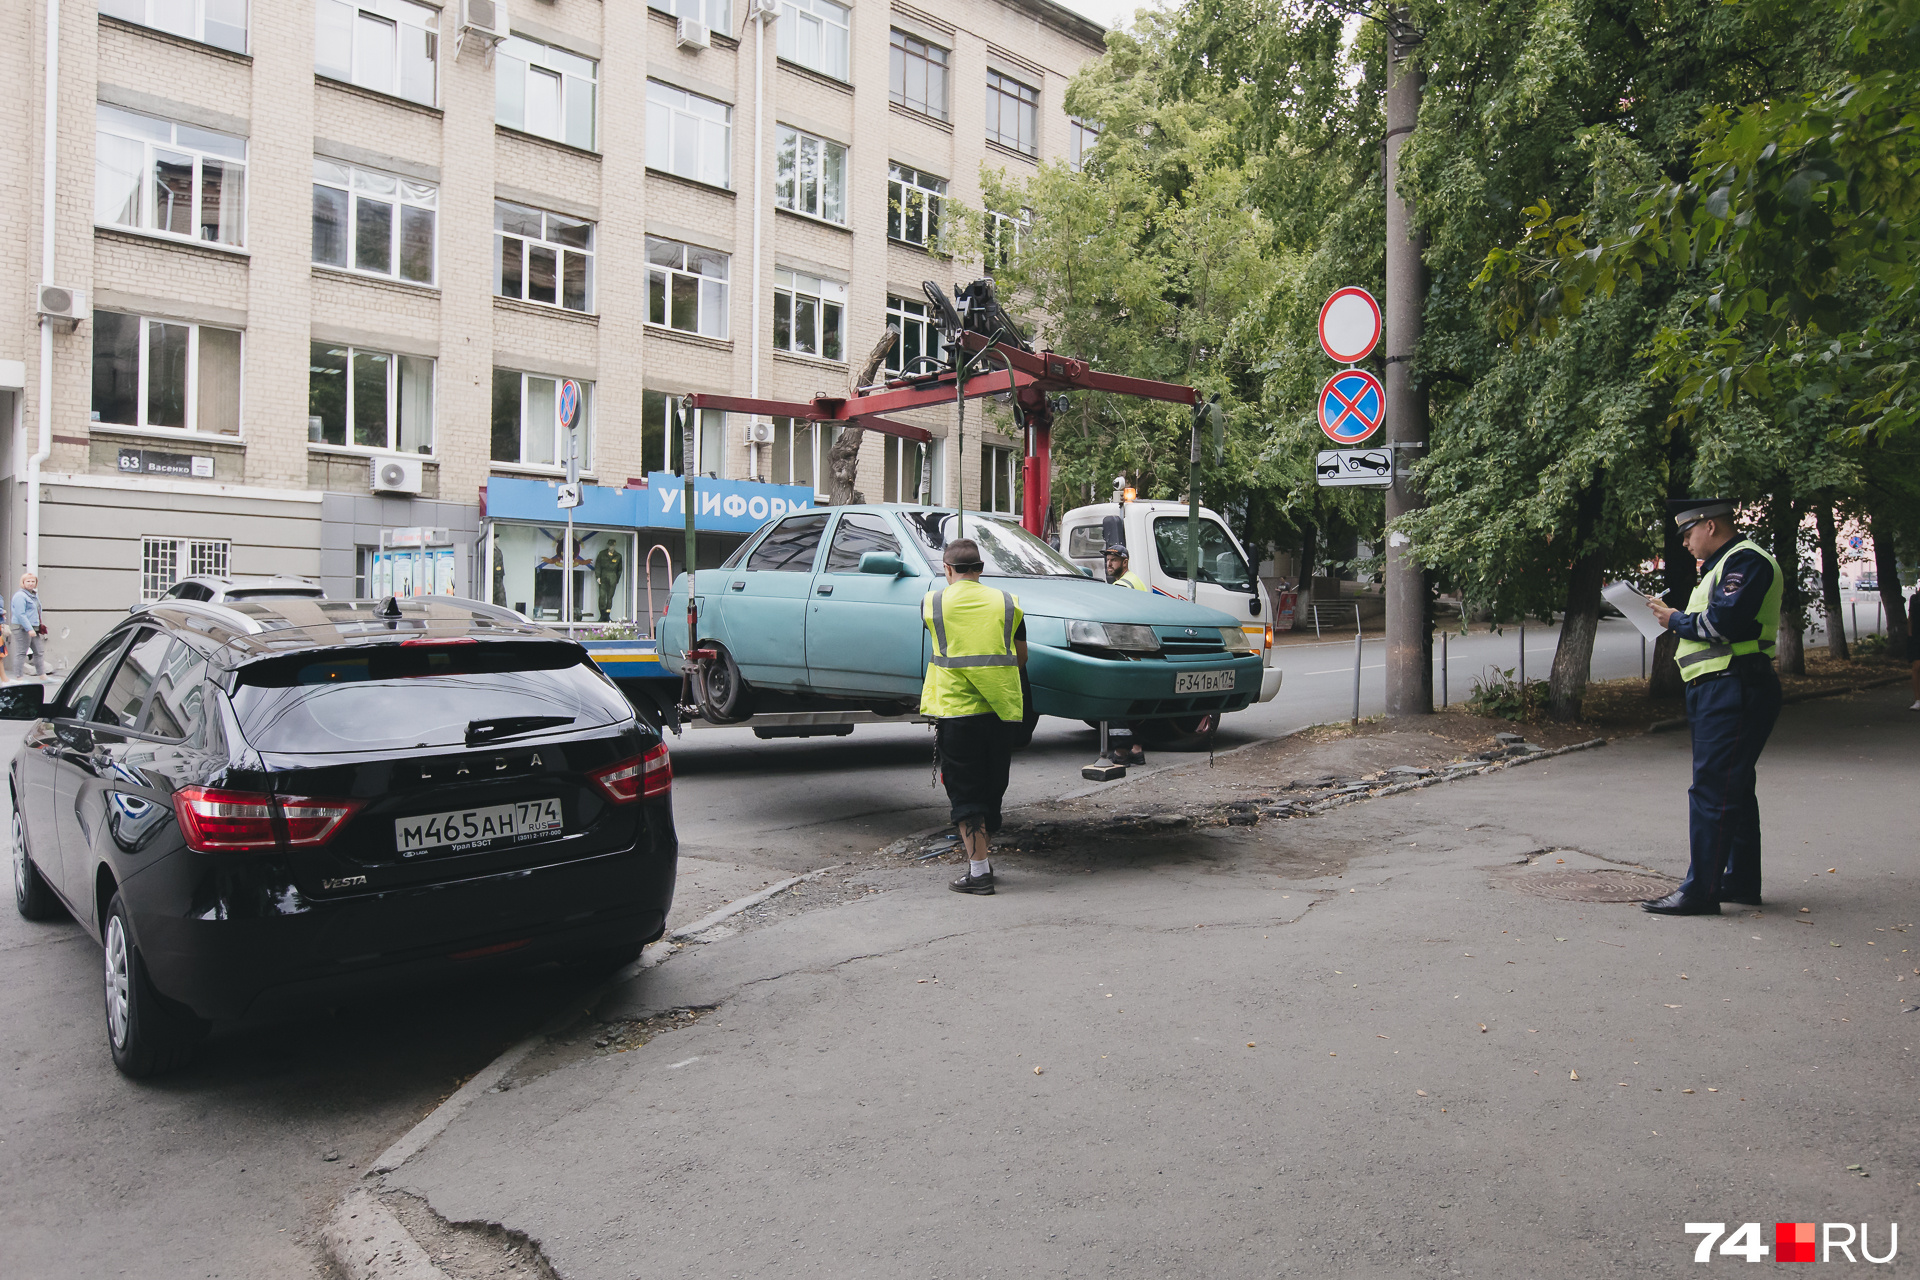 О проблемах с парковкой на пересечении проспекта Ленина и улицы Васенко знают многие: здесь регулярно эвакуируют машины, а разрешенных для стоянки мест явно не хватает